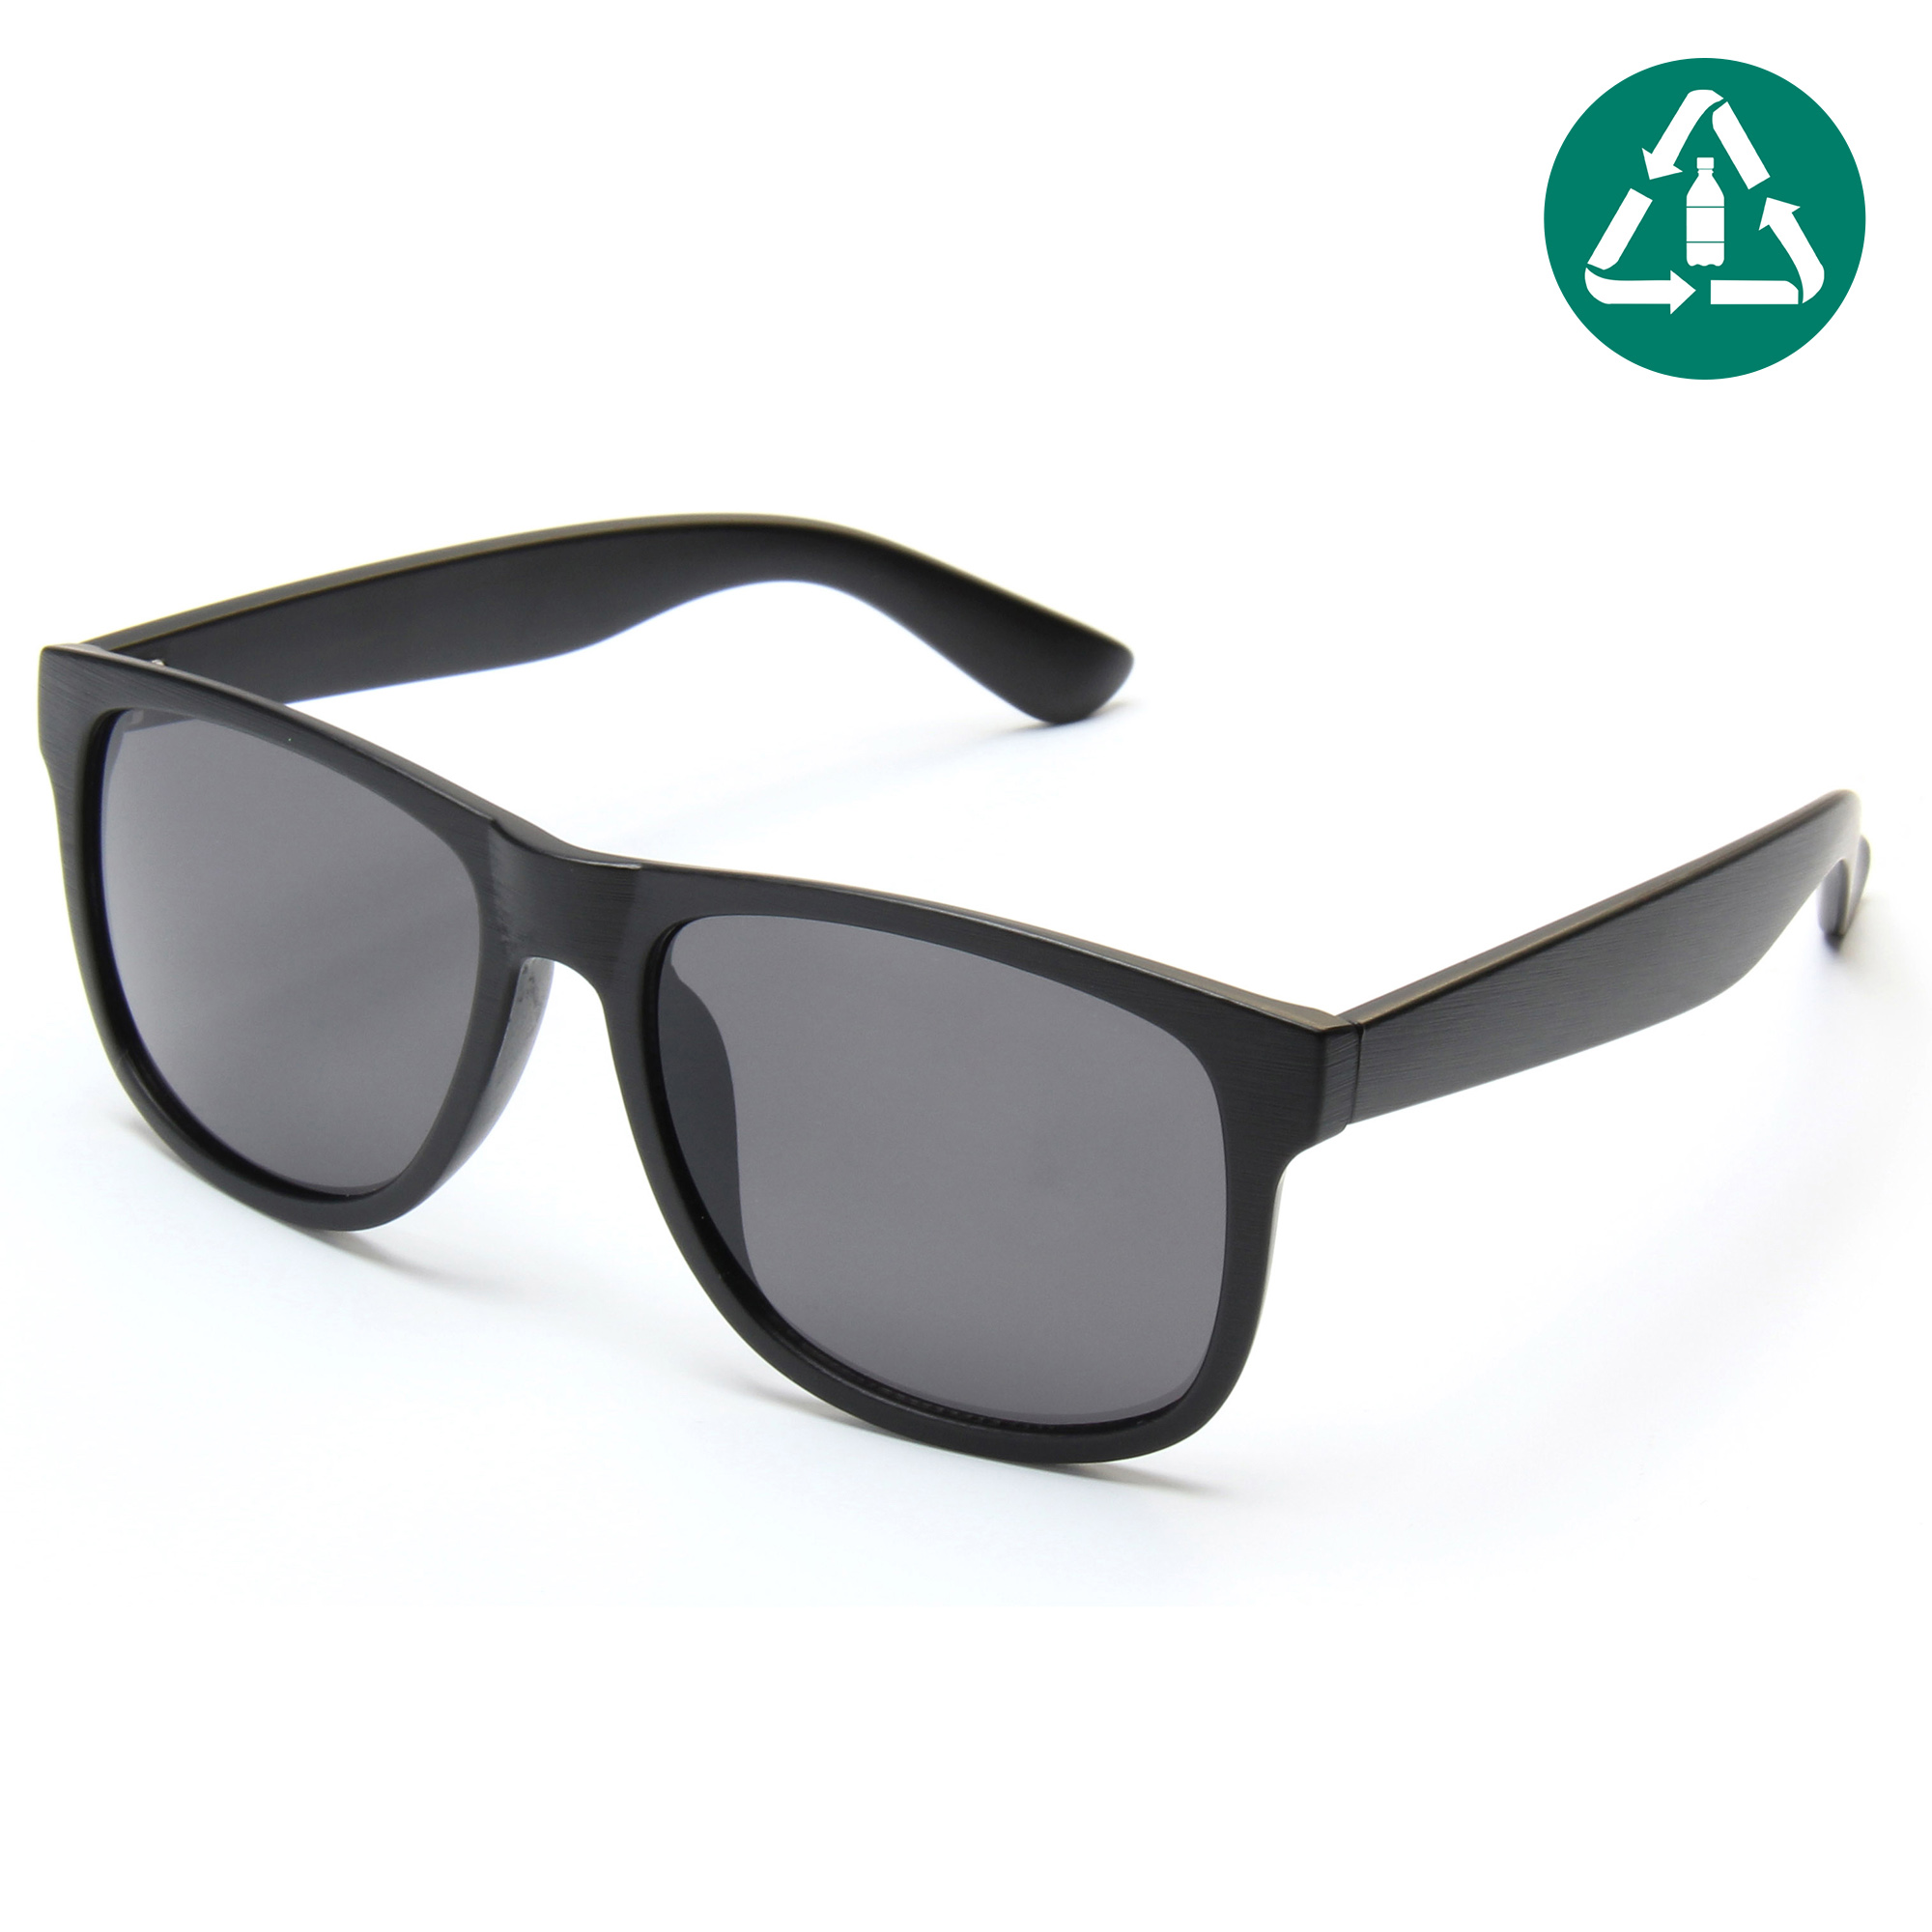 El nuevo material del marco de la PC del hombre y de las mujeres de las gafas de sol de EUGENIA recicló las gafas de sol de encargo UV400 del logotipo